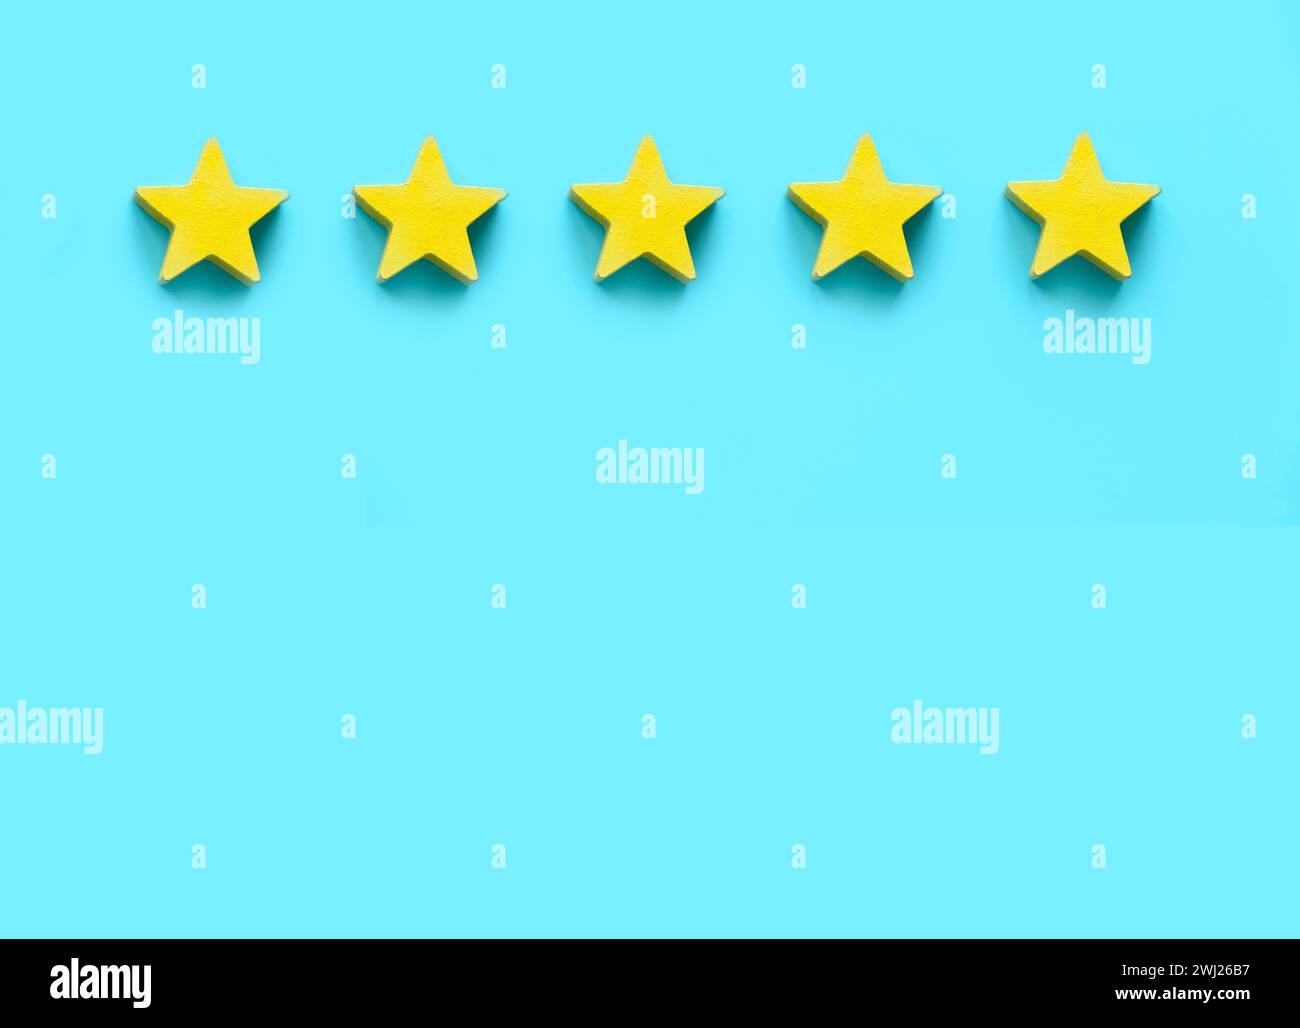 Commentaires des clients, évaluation des produits, satisfaction de l'expérience client. Cinq étoiles en bois jaune sur fond bleu avec espace de copie. Banque D'Images